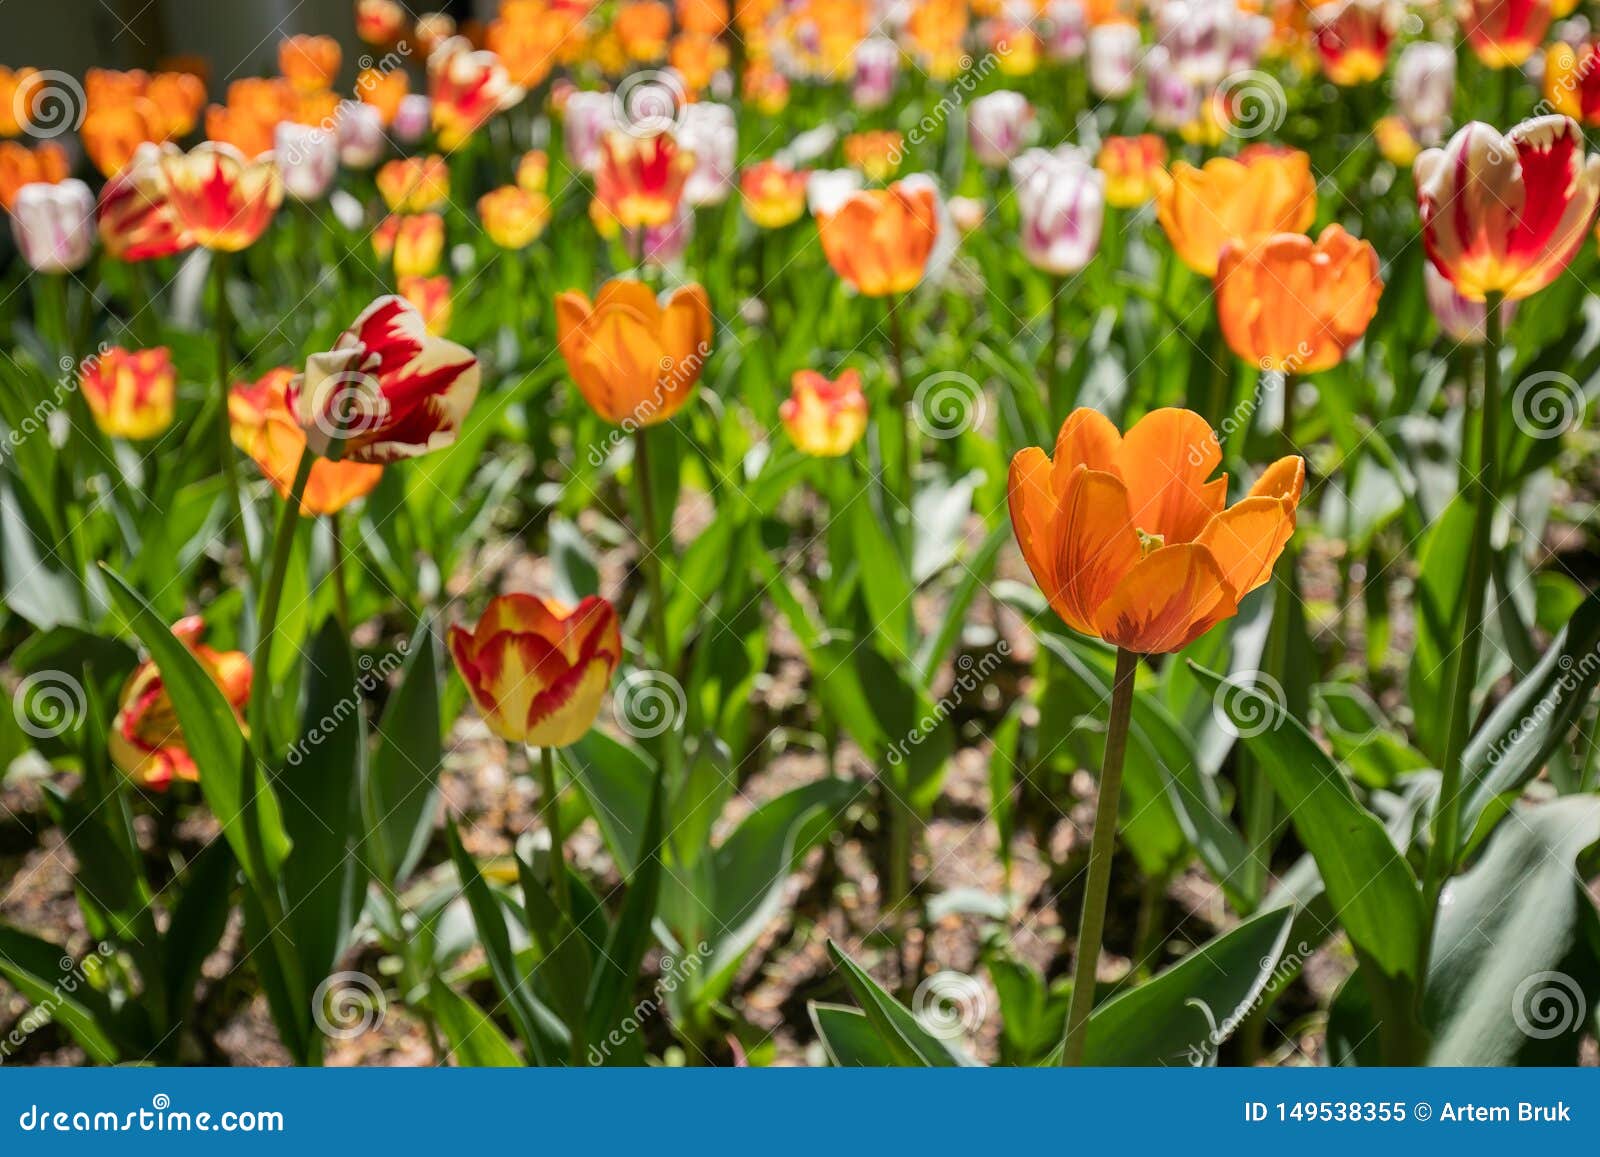 Closeup av orange och vitt med purpurfärgade Tulip Flowers. Stads- blomsterrabatt med planterade Tulip Flowers Closeup av orange och vitt med purpurfärgade blommor på en Sunny Day